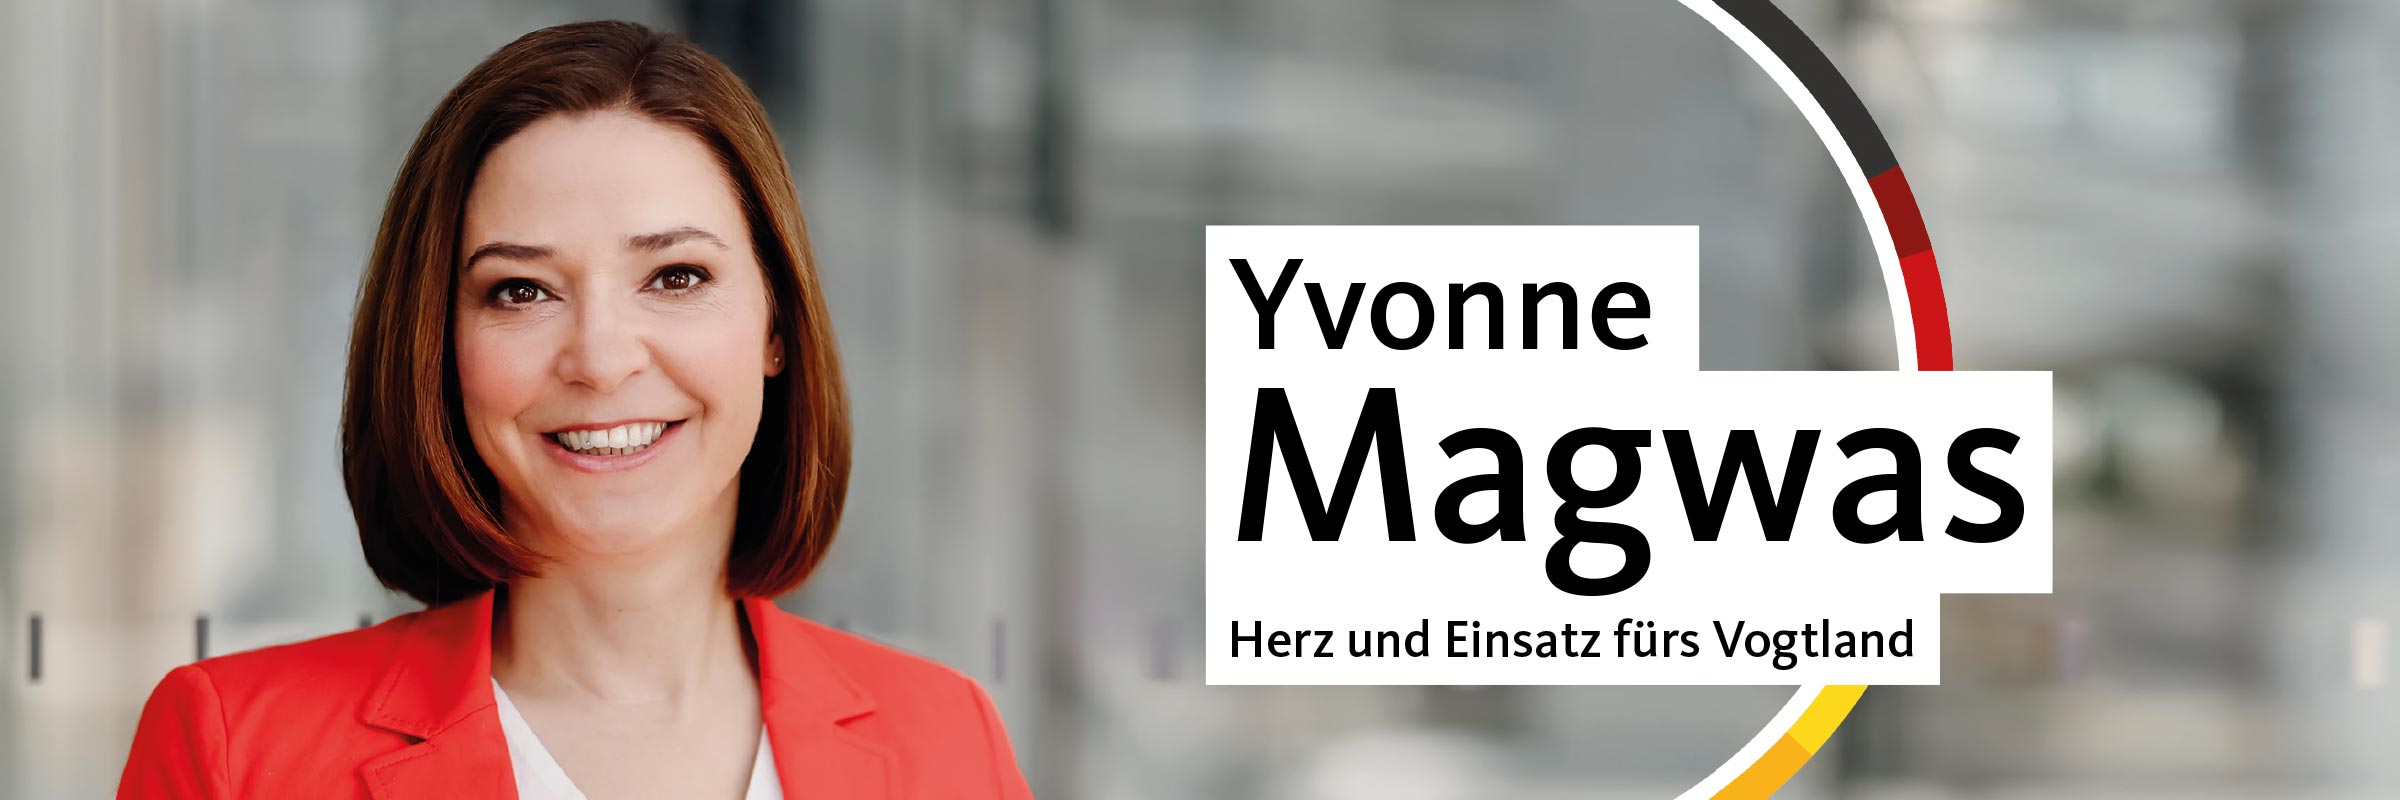 YvonneMagwas CDU Herz und Einsatz fuers Vogtland